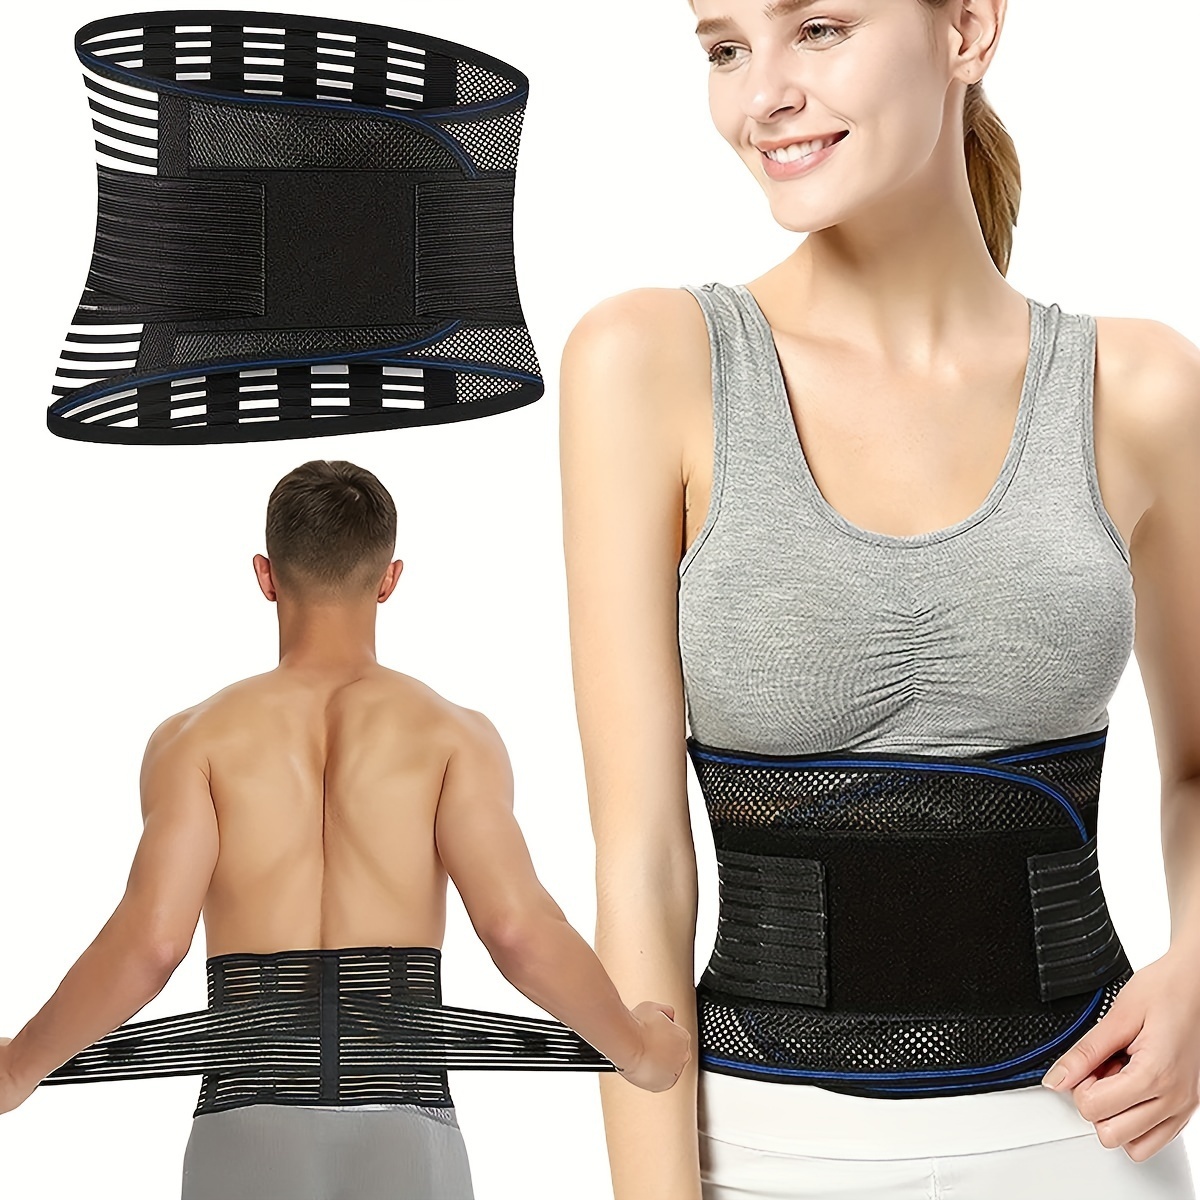 TESETON Back Support Belt for Women and Men, Back Brace Relieve Lower Back  Pain, Lower Back